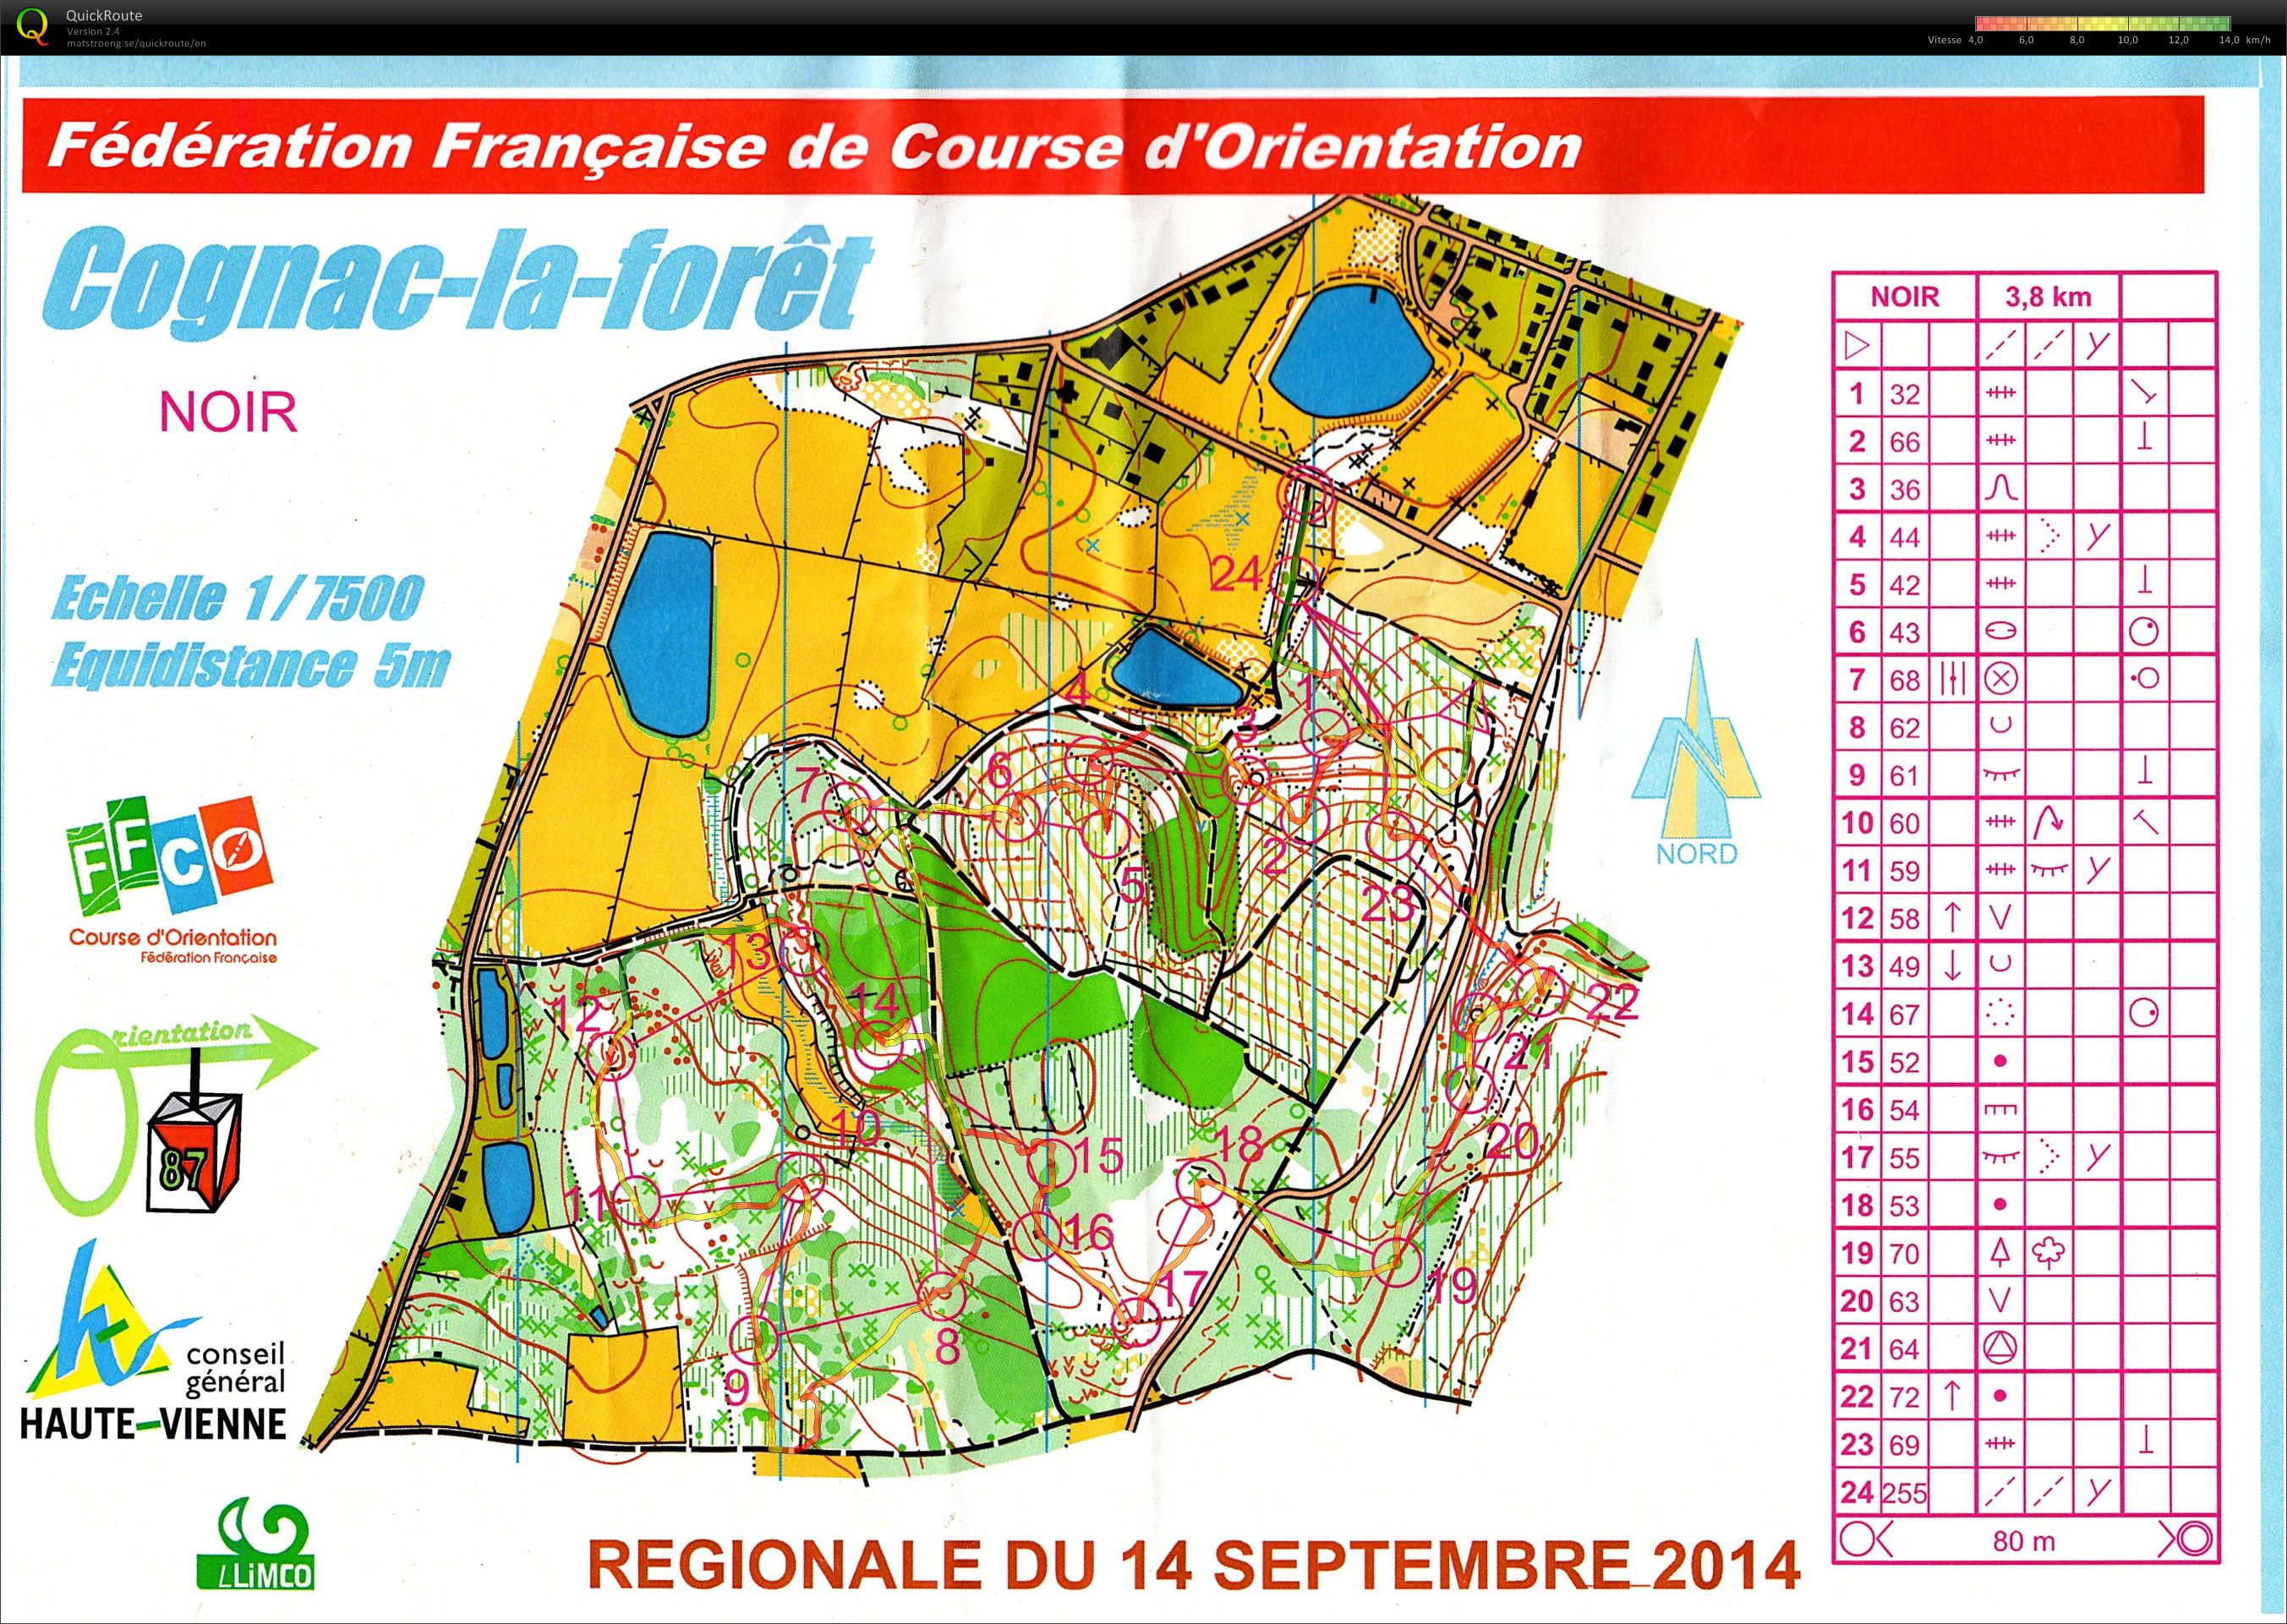 Régionale Limousin MD (14-09-2014)